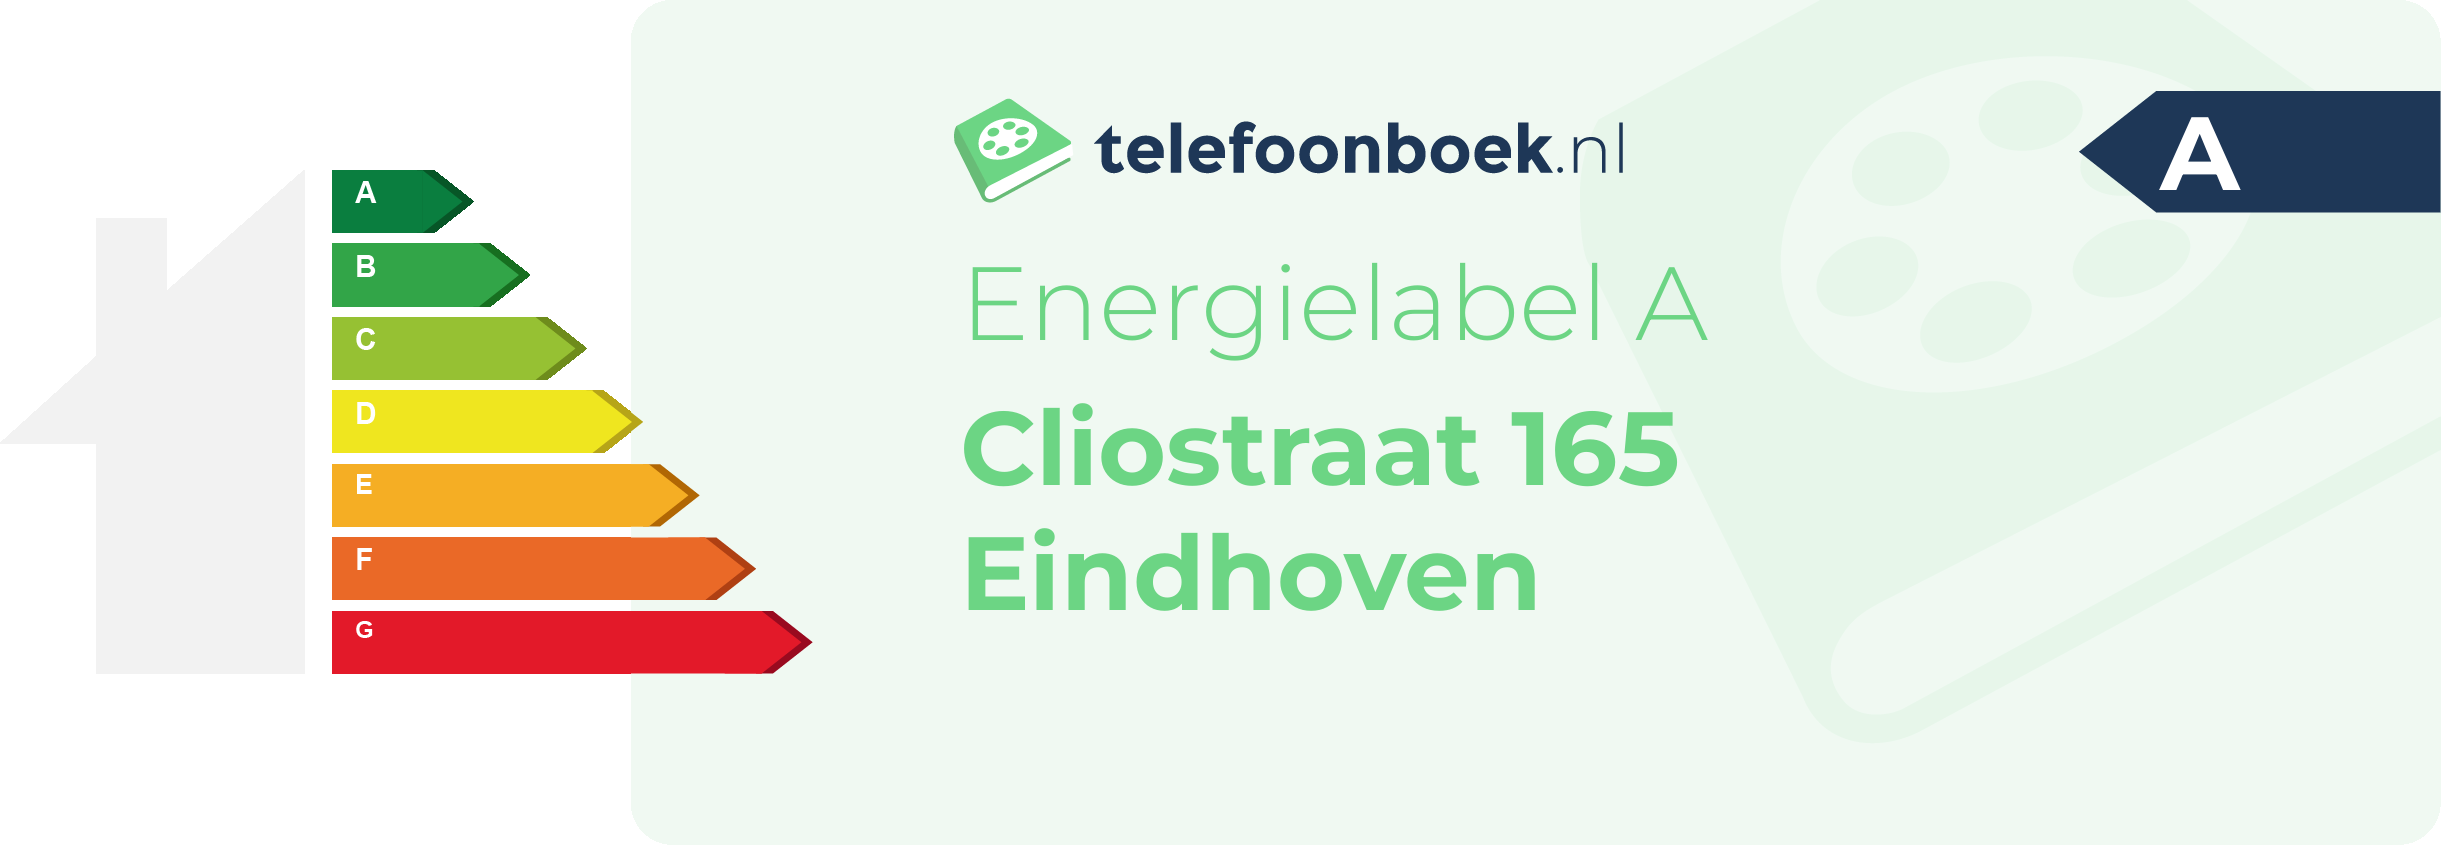 Energielabel Cliostraat 165 Eindhoven